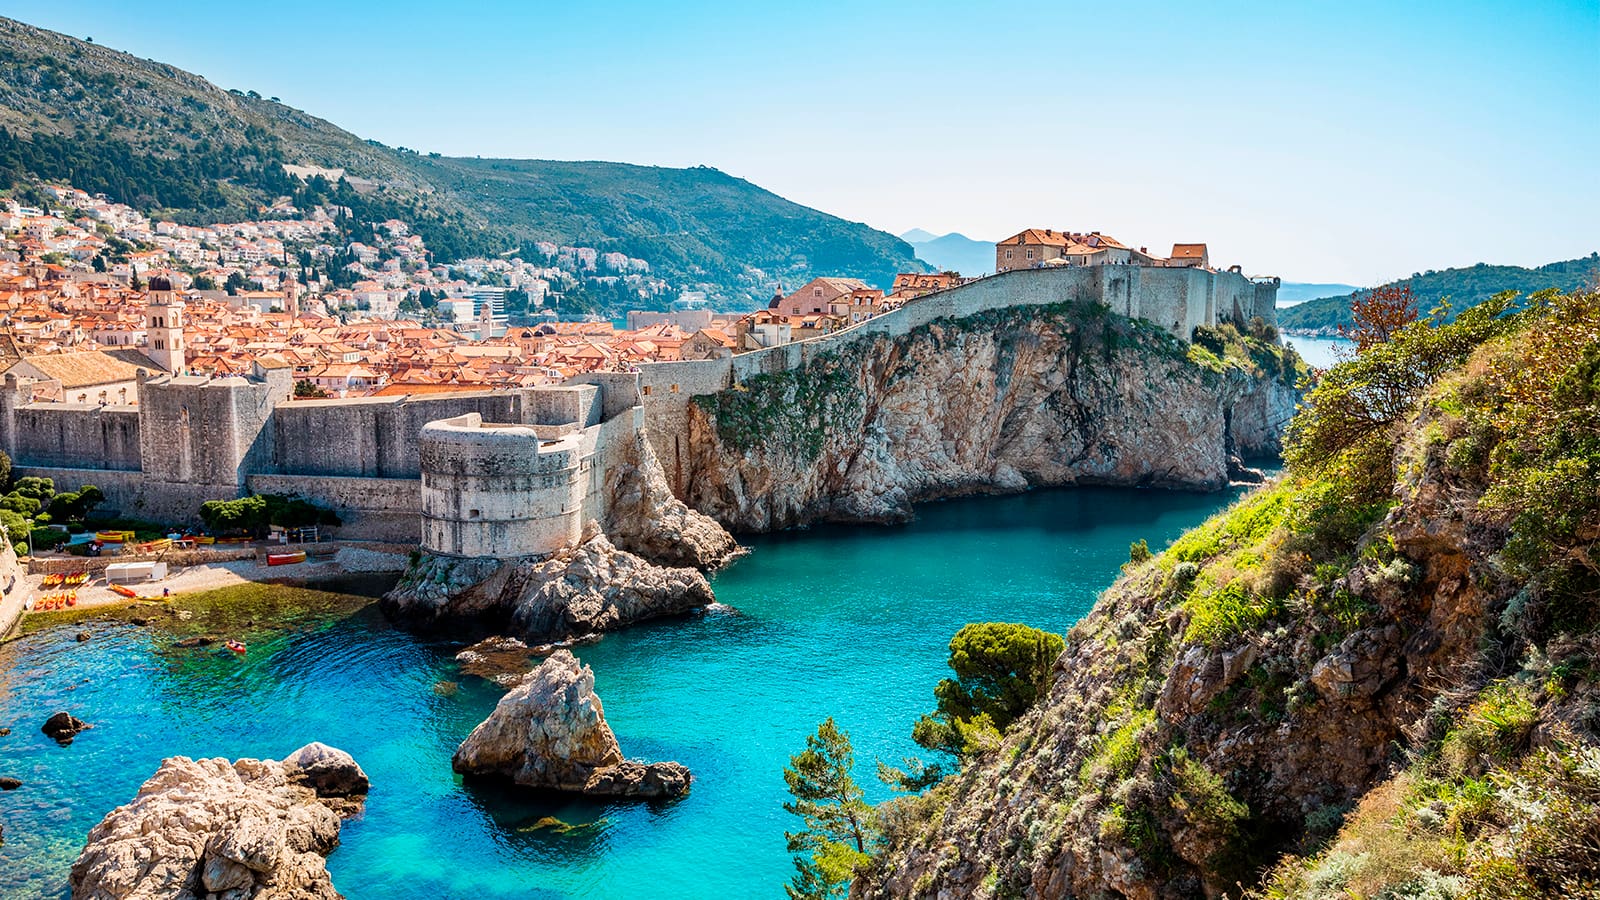 Baia-de-Dubrovnik 